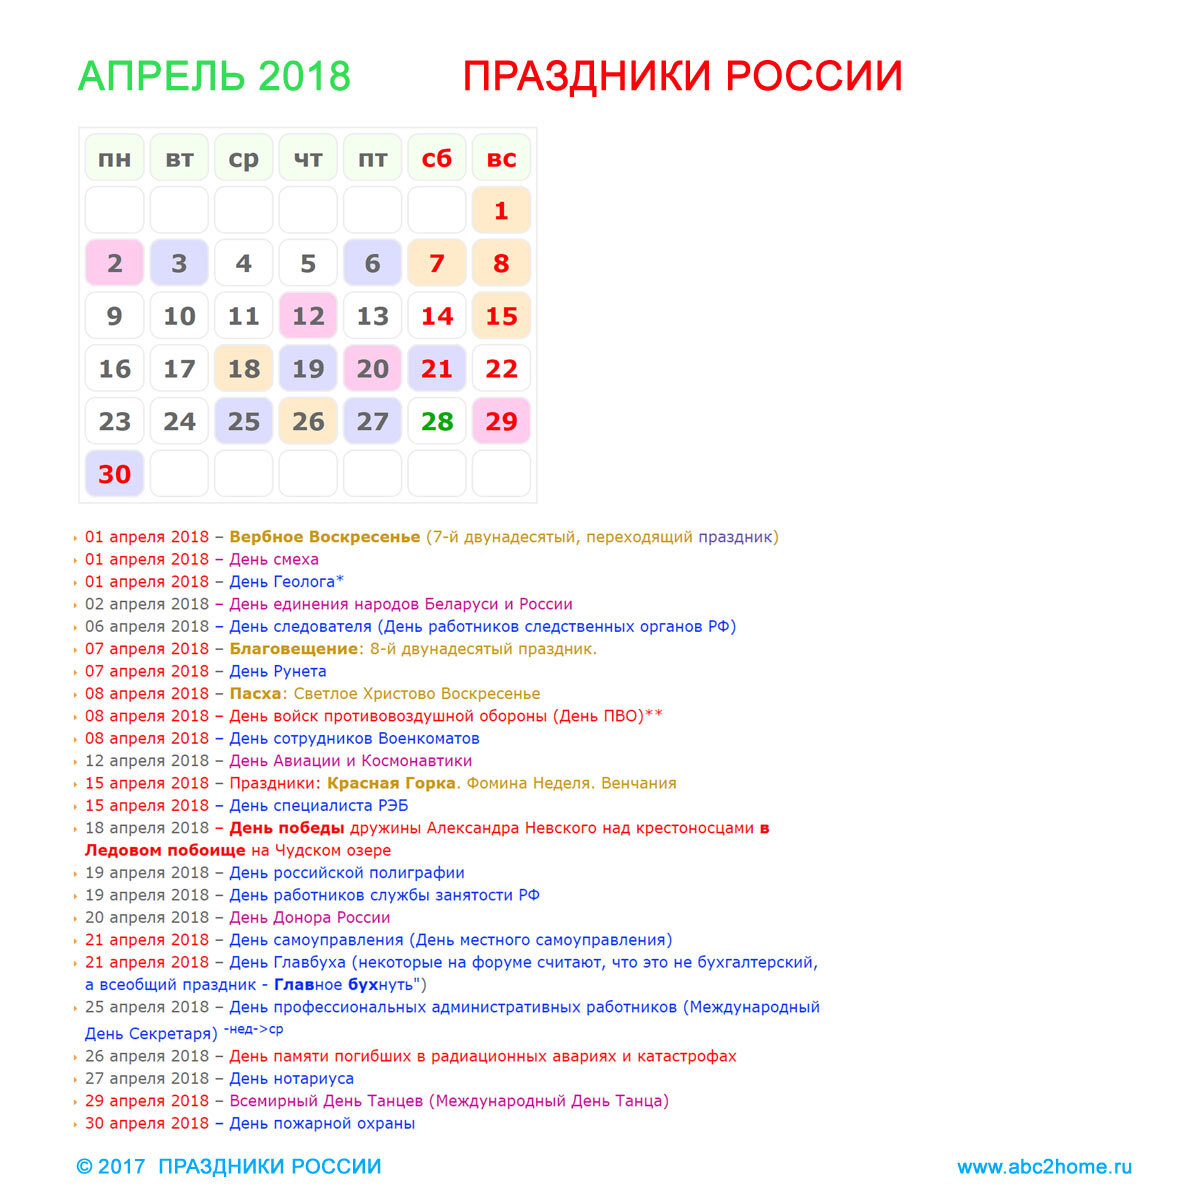 Международные дни в апреле. Праздники в апреле. Профессиональные праздники в апреле. Календарь праздников на апрель. Российские праздники в апреле.